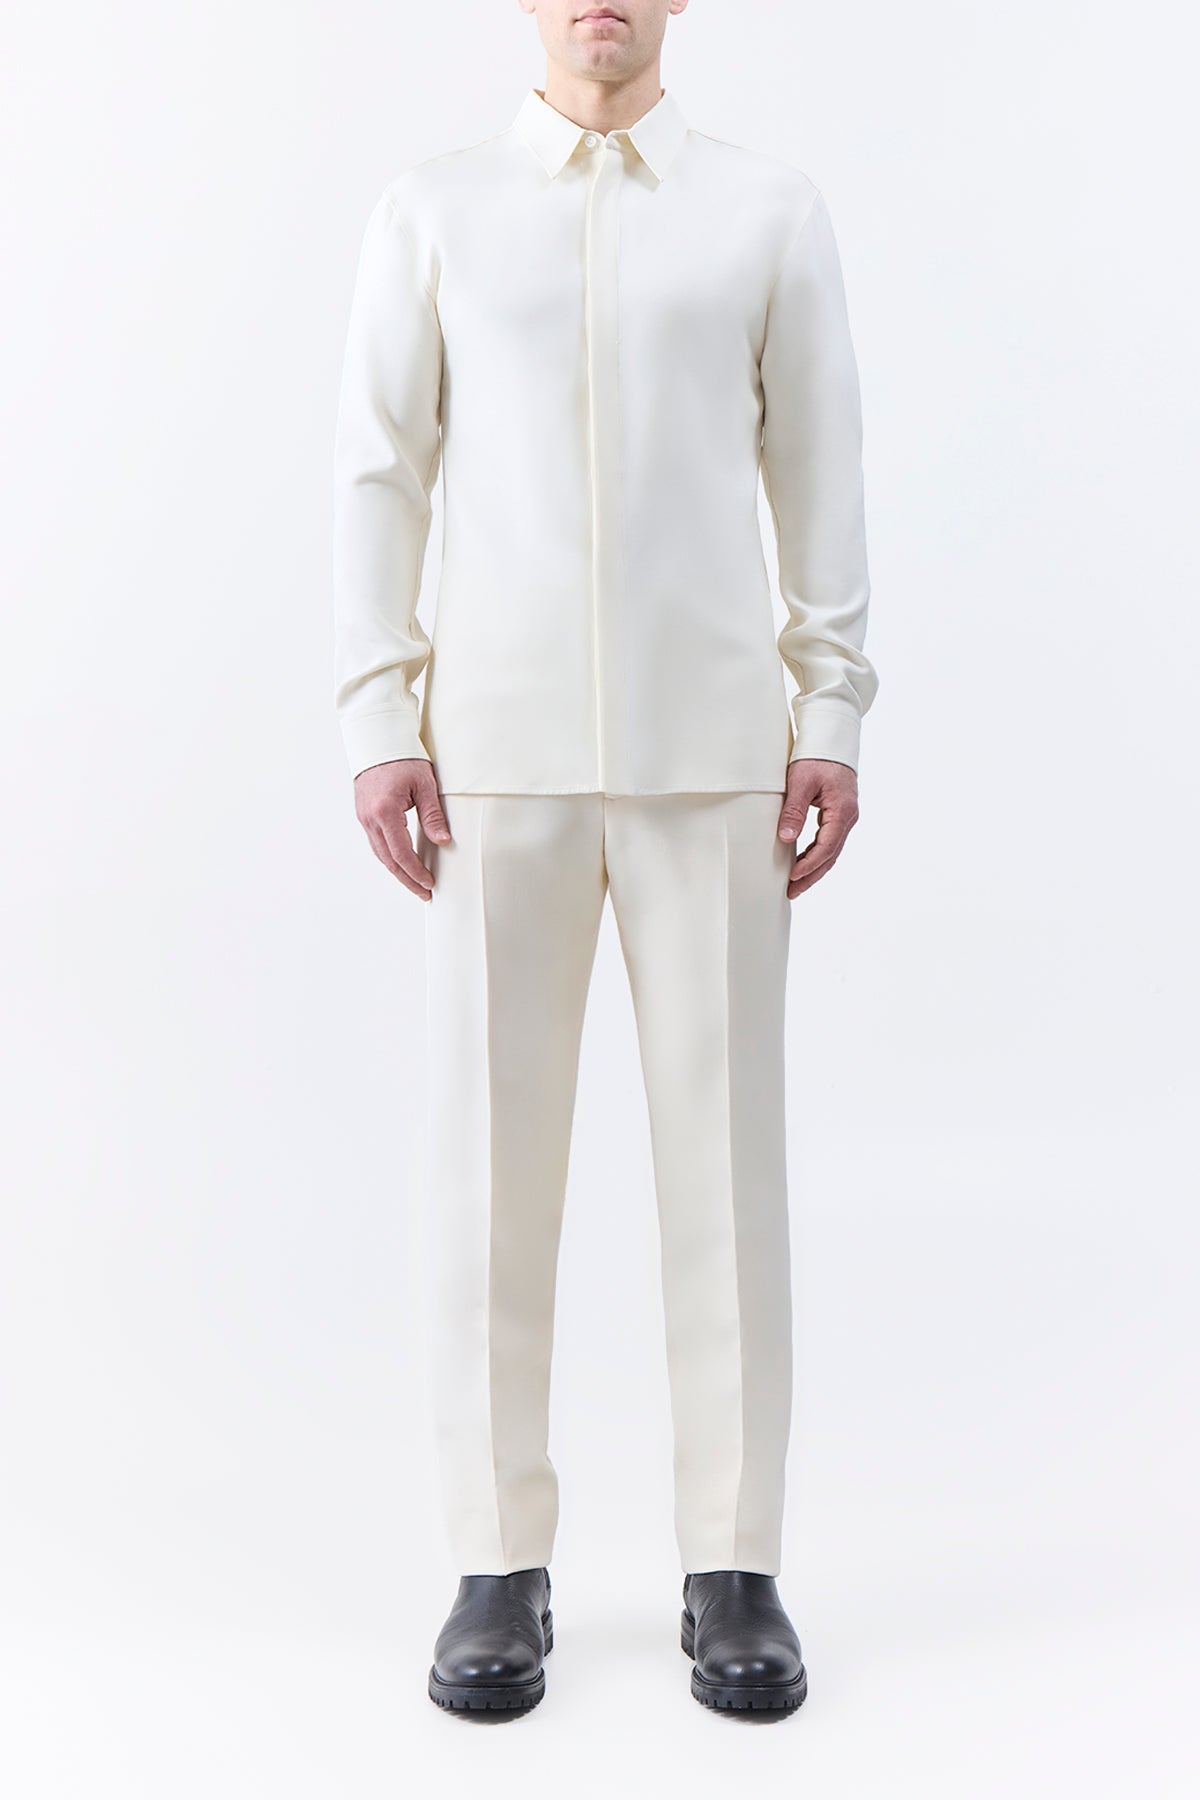 Nicolas Shirt in Ivory Silk Wool Cady